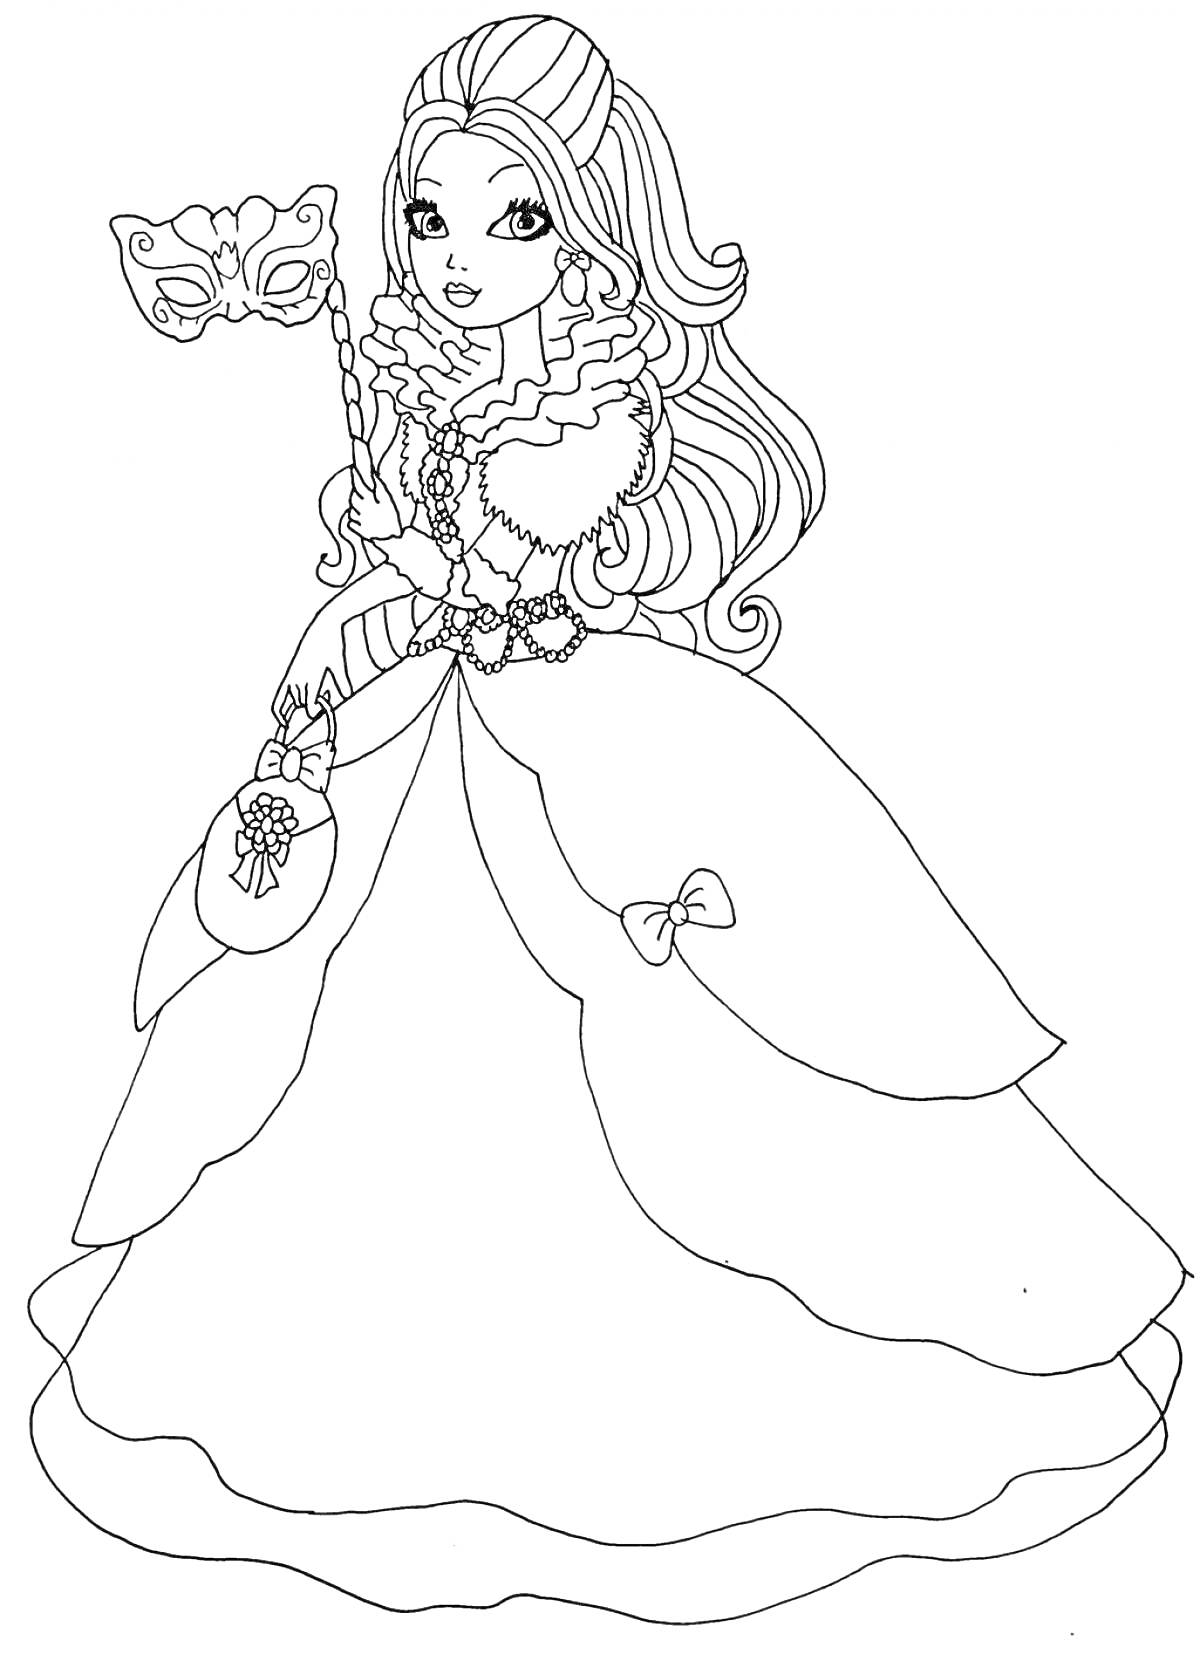 Раскраска Девушка из Эвер Афтер Хай в пышном платье с оборками, держащая маску в правой руке и маленькую сумочку в левой